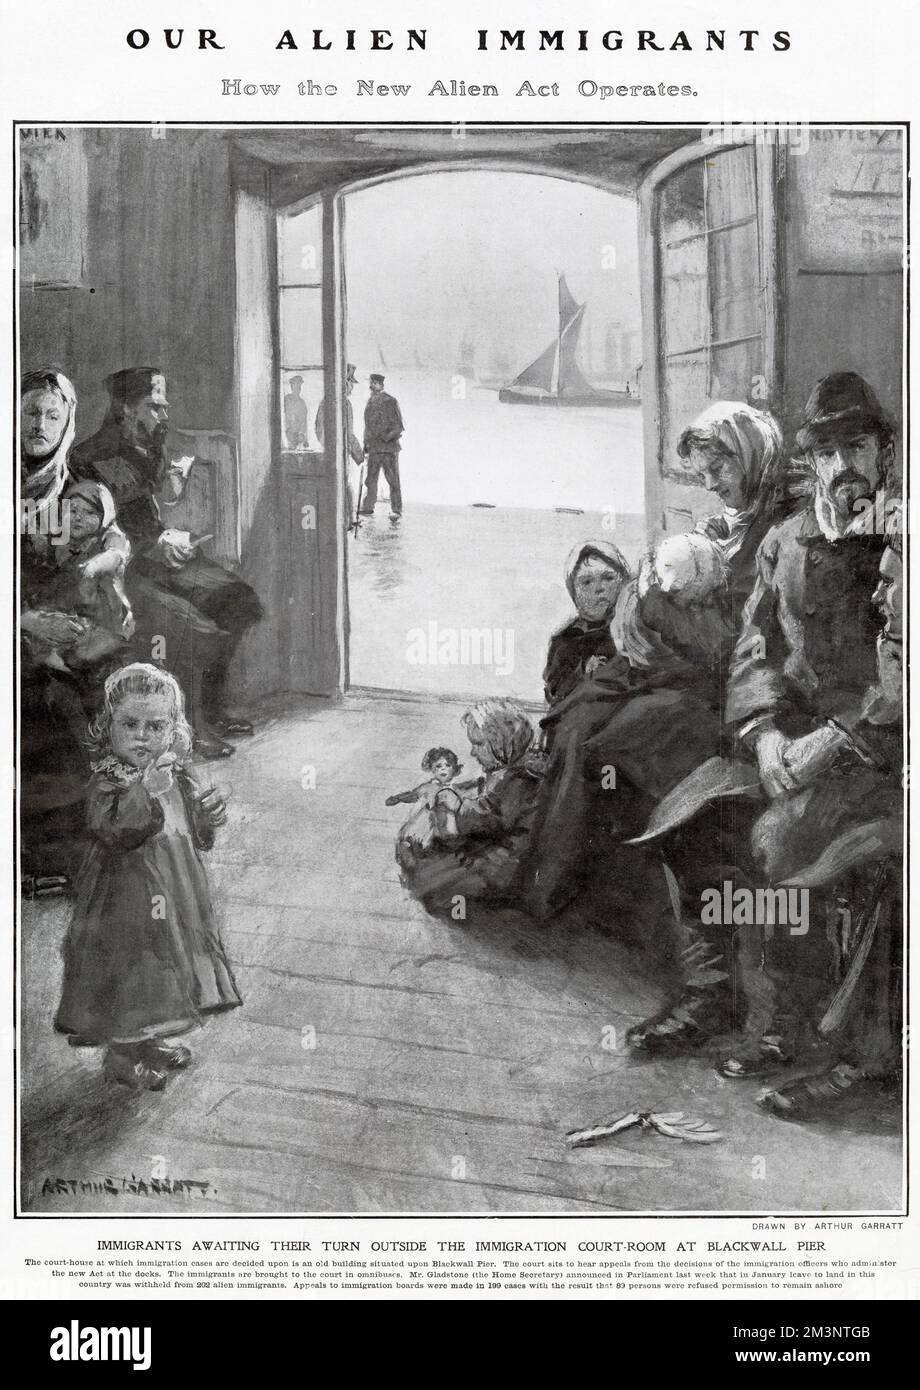 Das Einwanderungsgesetz von 1906 war der erste rechtliche Mechanismus, um eine Politik selektiver Kategorien verbotener Einwanderer durchzusetzen, und es hat das Recht der Regierung, unerwünschte Einwanderer abzuschieben, gesetzlich verankert. Zeichnung mit eingewanderten Familien in einem Gerichtsgebäude am Blackwall Pier, East India Docks, appelliert, in Großbritannien zu bleiben. Stockfoto